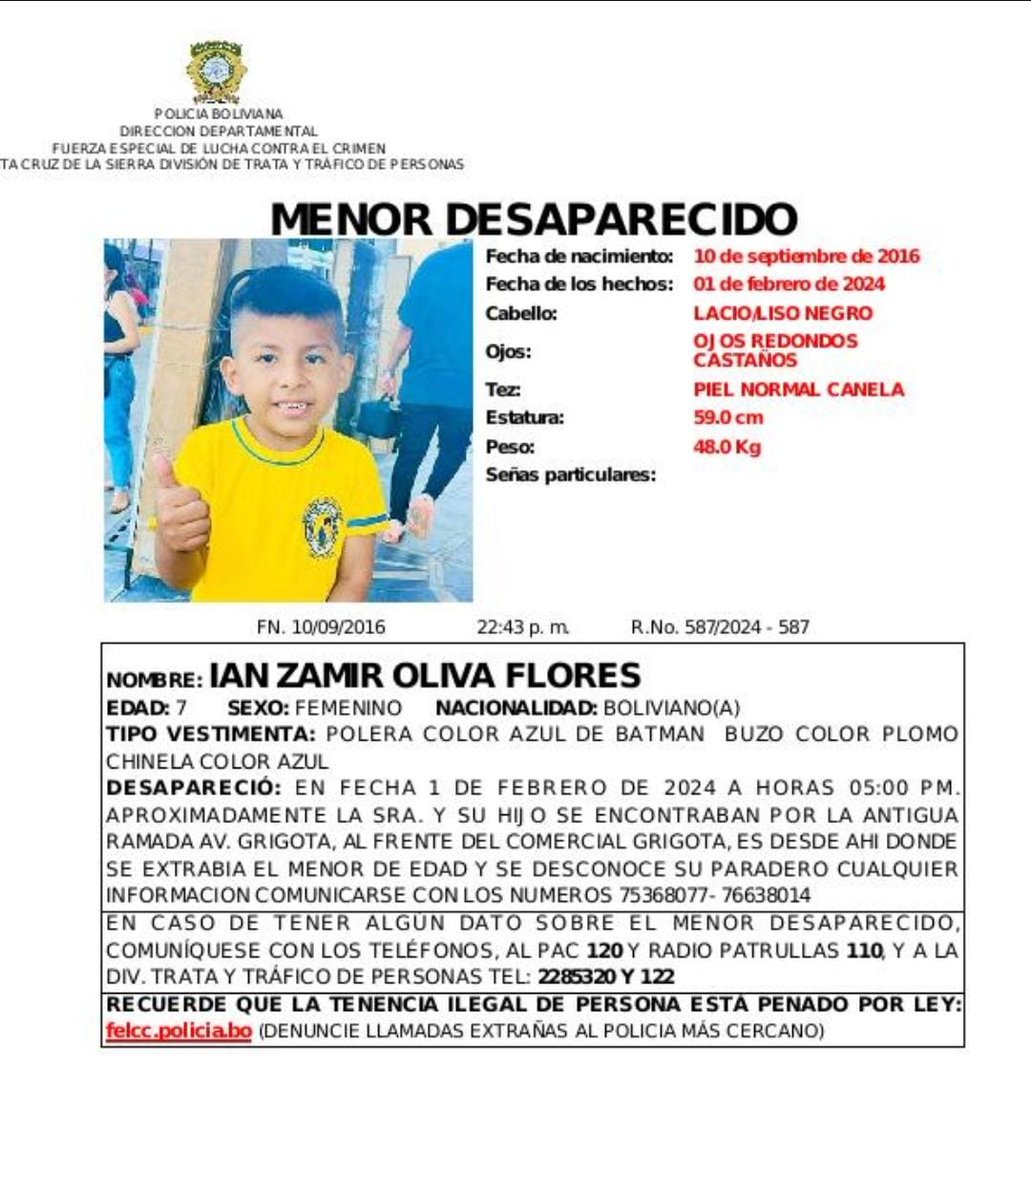 #SantaCruz #AlertaJuliana #MenorDesaparecido Buscamos a 𝗜𝗔𝗡 𝗭𝗔𝗠𝗜𝗥 𝗢𝗟𝗜𝗩𝗔 𝗙𝗟𝗢𝗥𝗘𝗦 de 7 años, quien desapareció el 01 de febrero, hasta la fecha se desconoce su paradero. Contáctate a los teléfonos, 2285320, 110, 120 o a nuestras redes sociales.